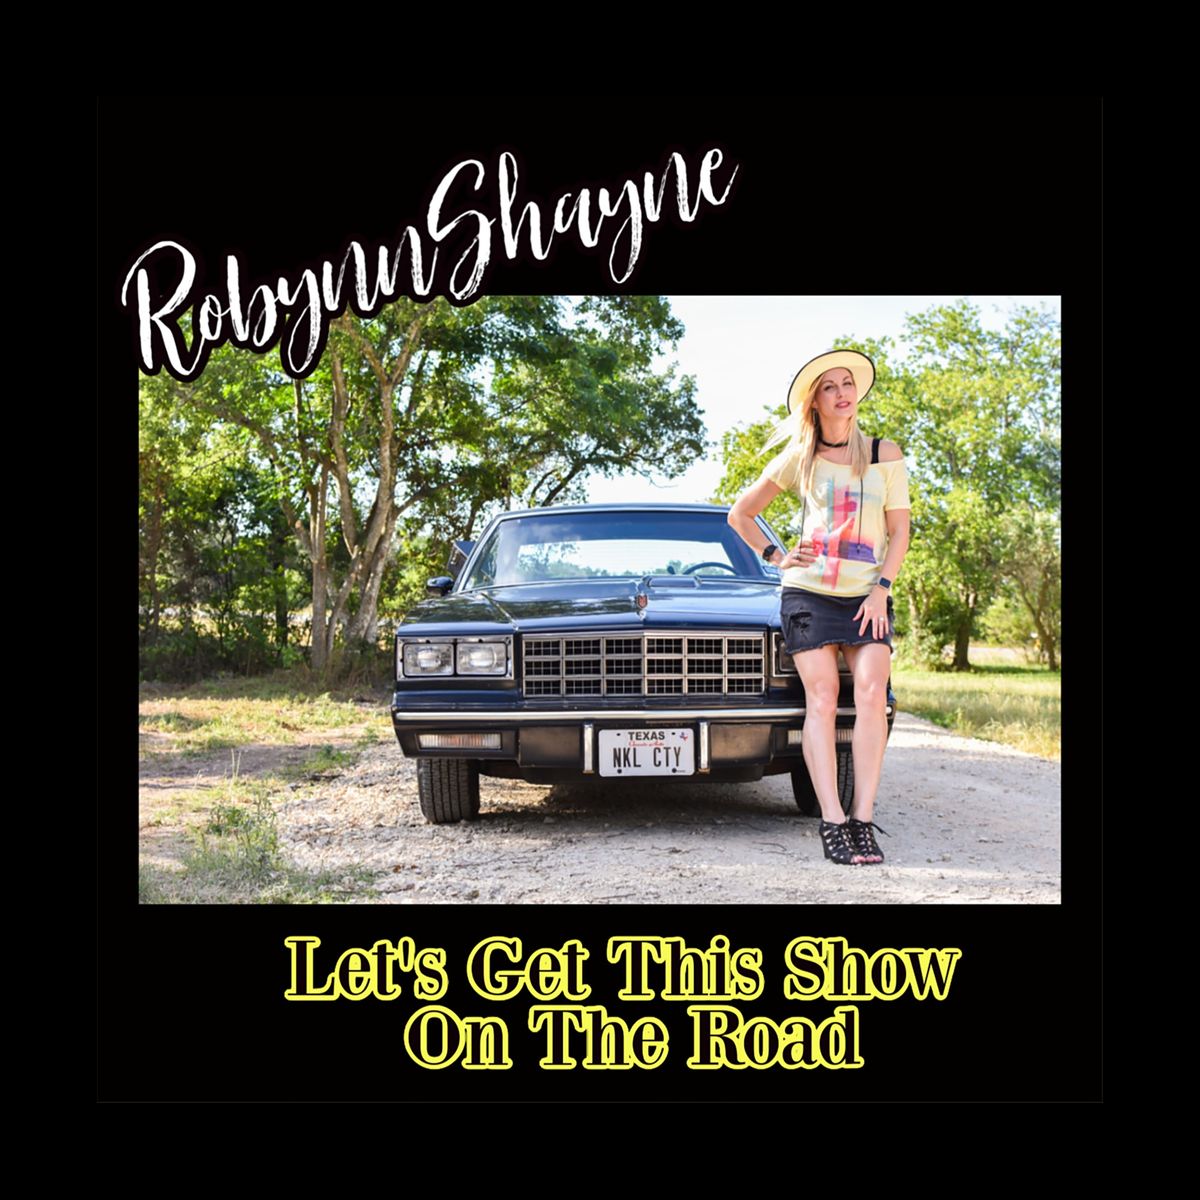 Robynn Shayne Album Release Show